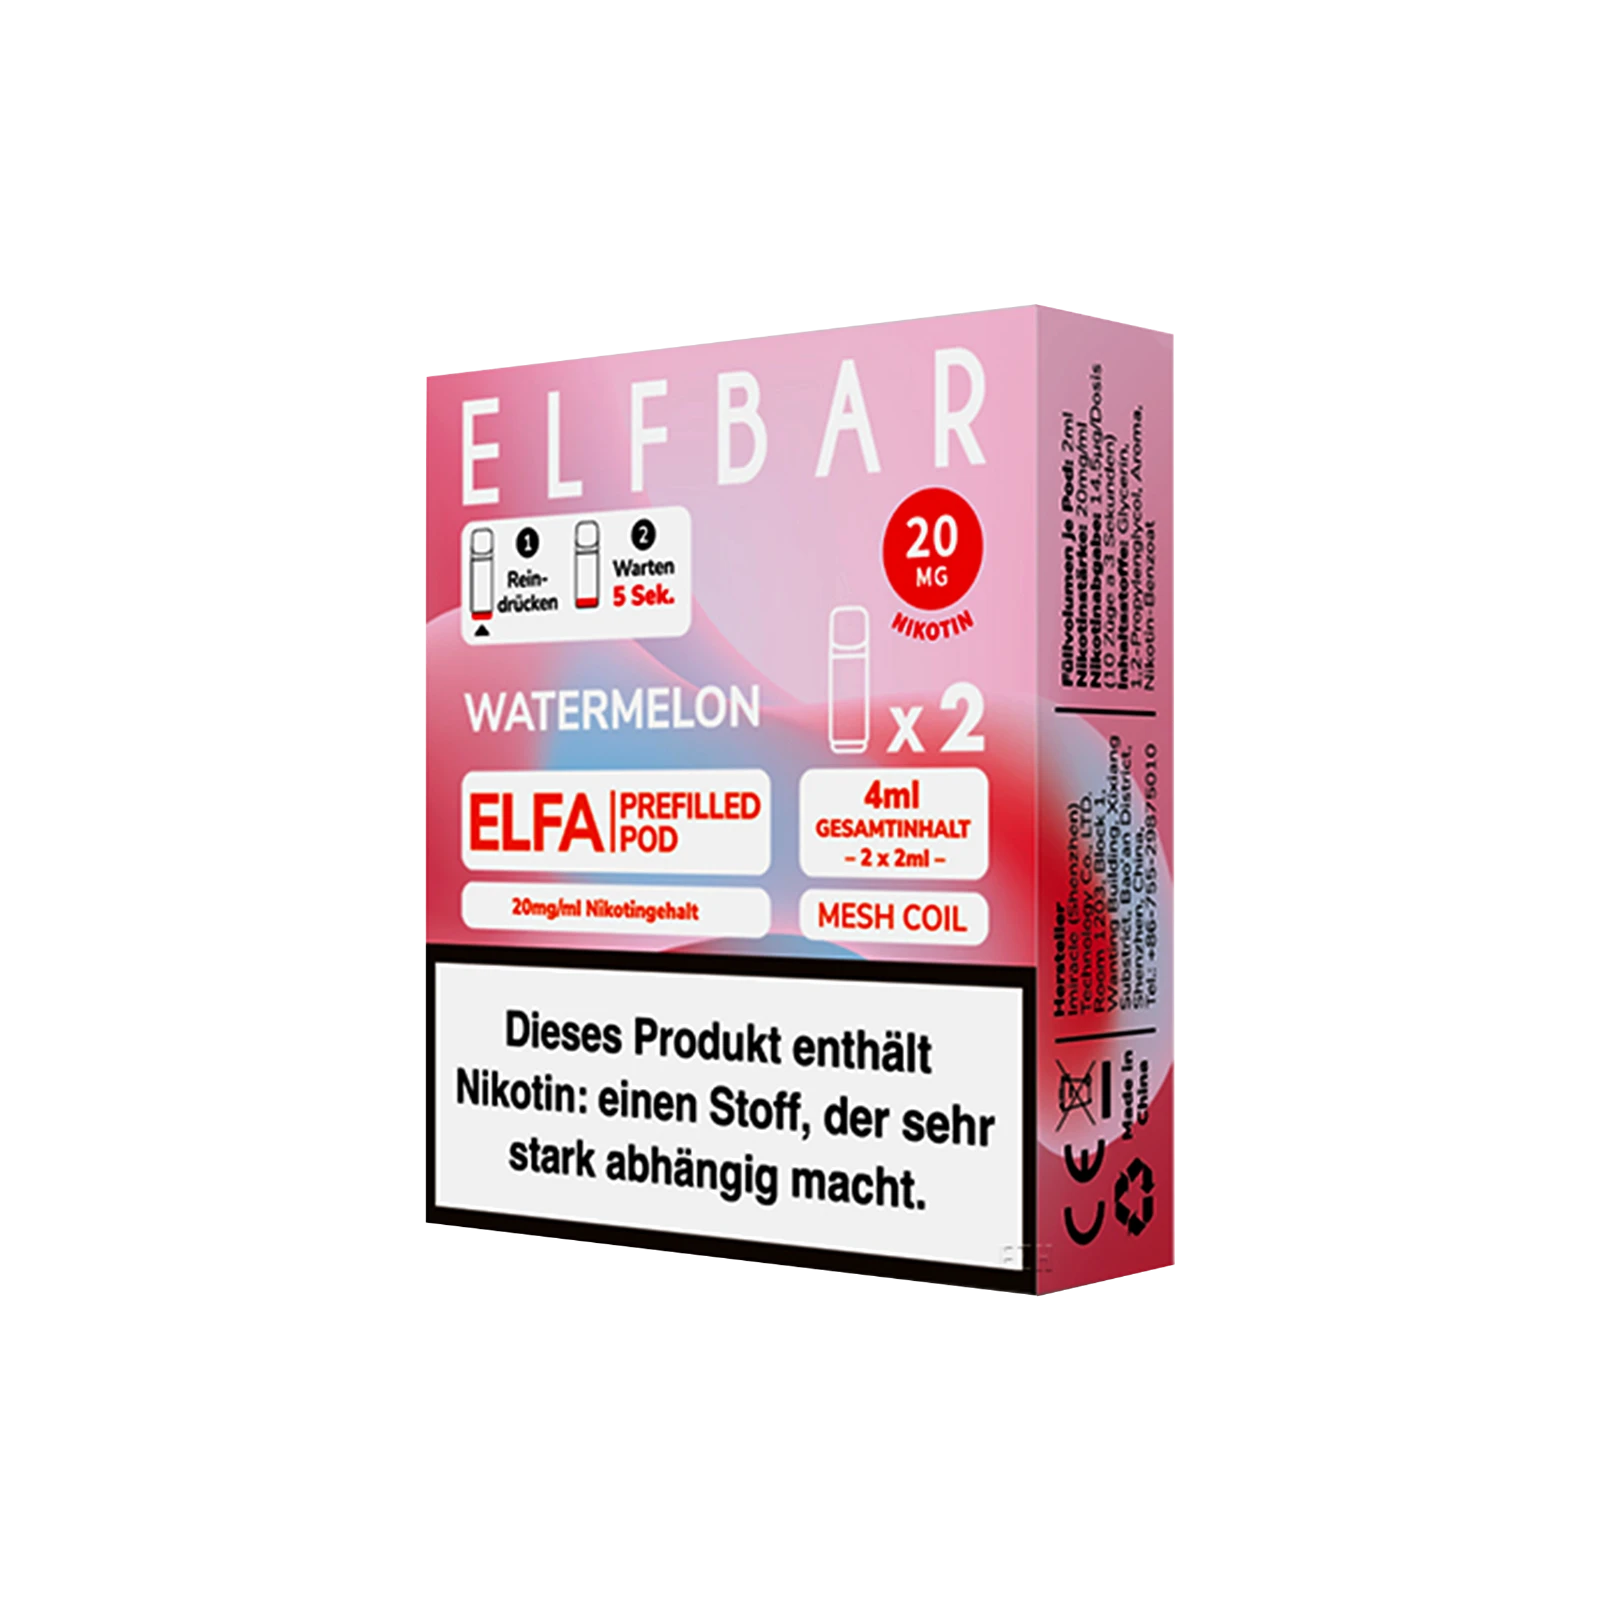 Elf Bar ELFA CP Prefilled Pod Watermelon | Neue Liquid Sorten